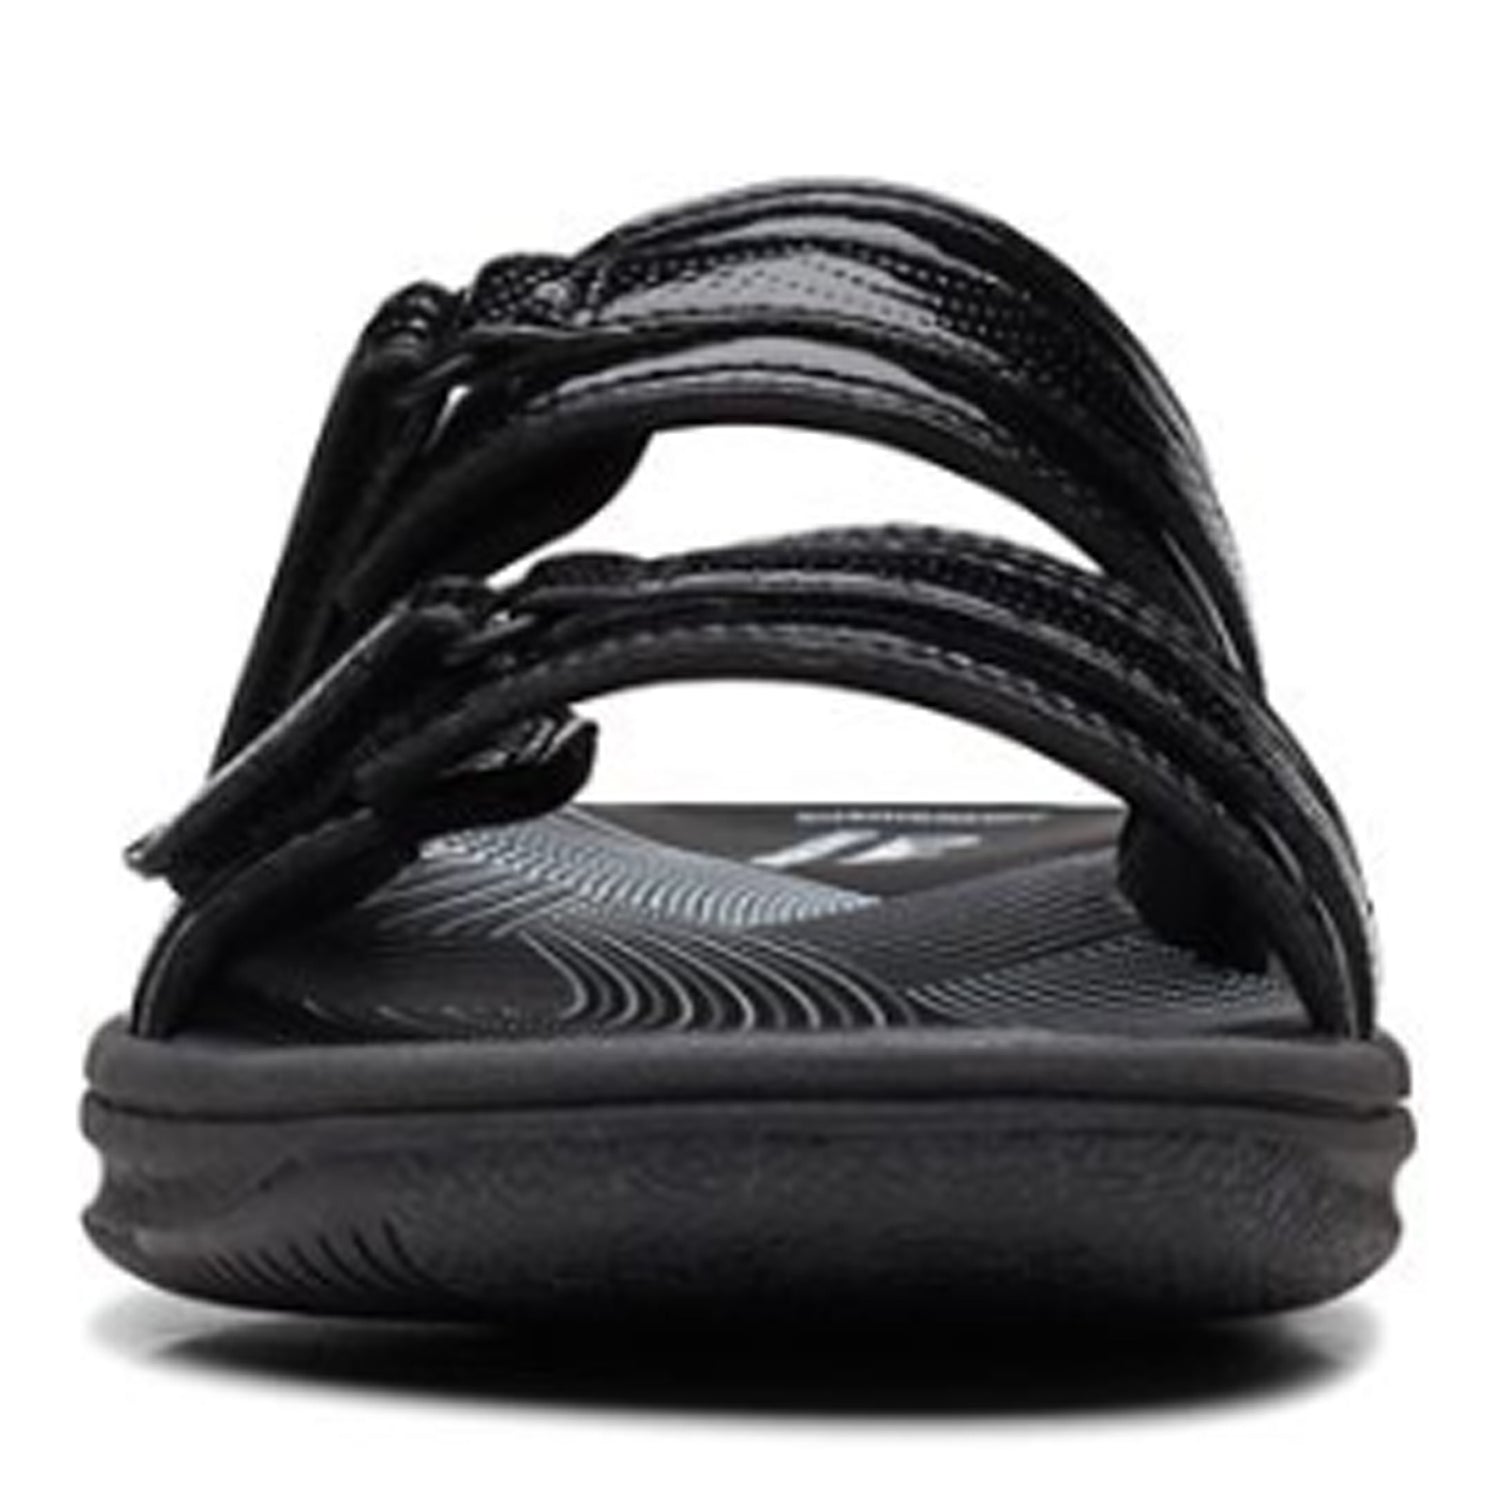 Peltz Shoes  Women's Clarks Breeze Piper Sandal BLACK PATENT 26171970